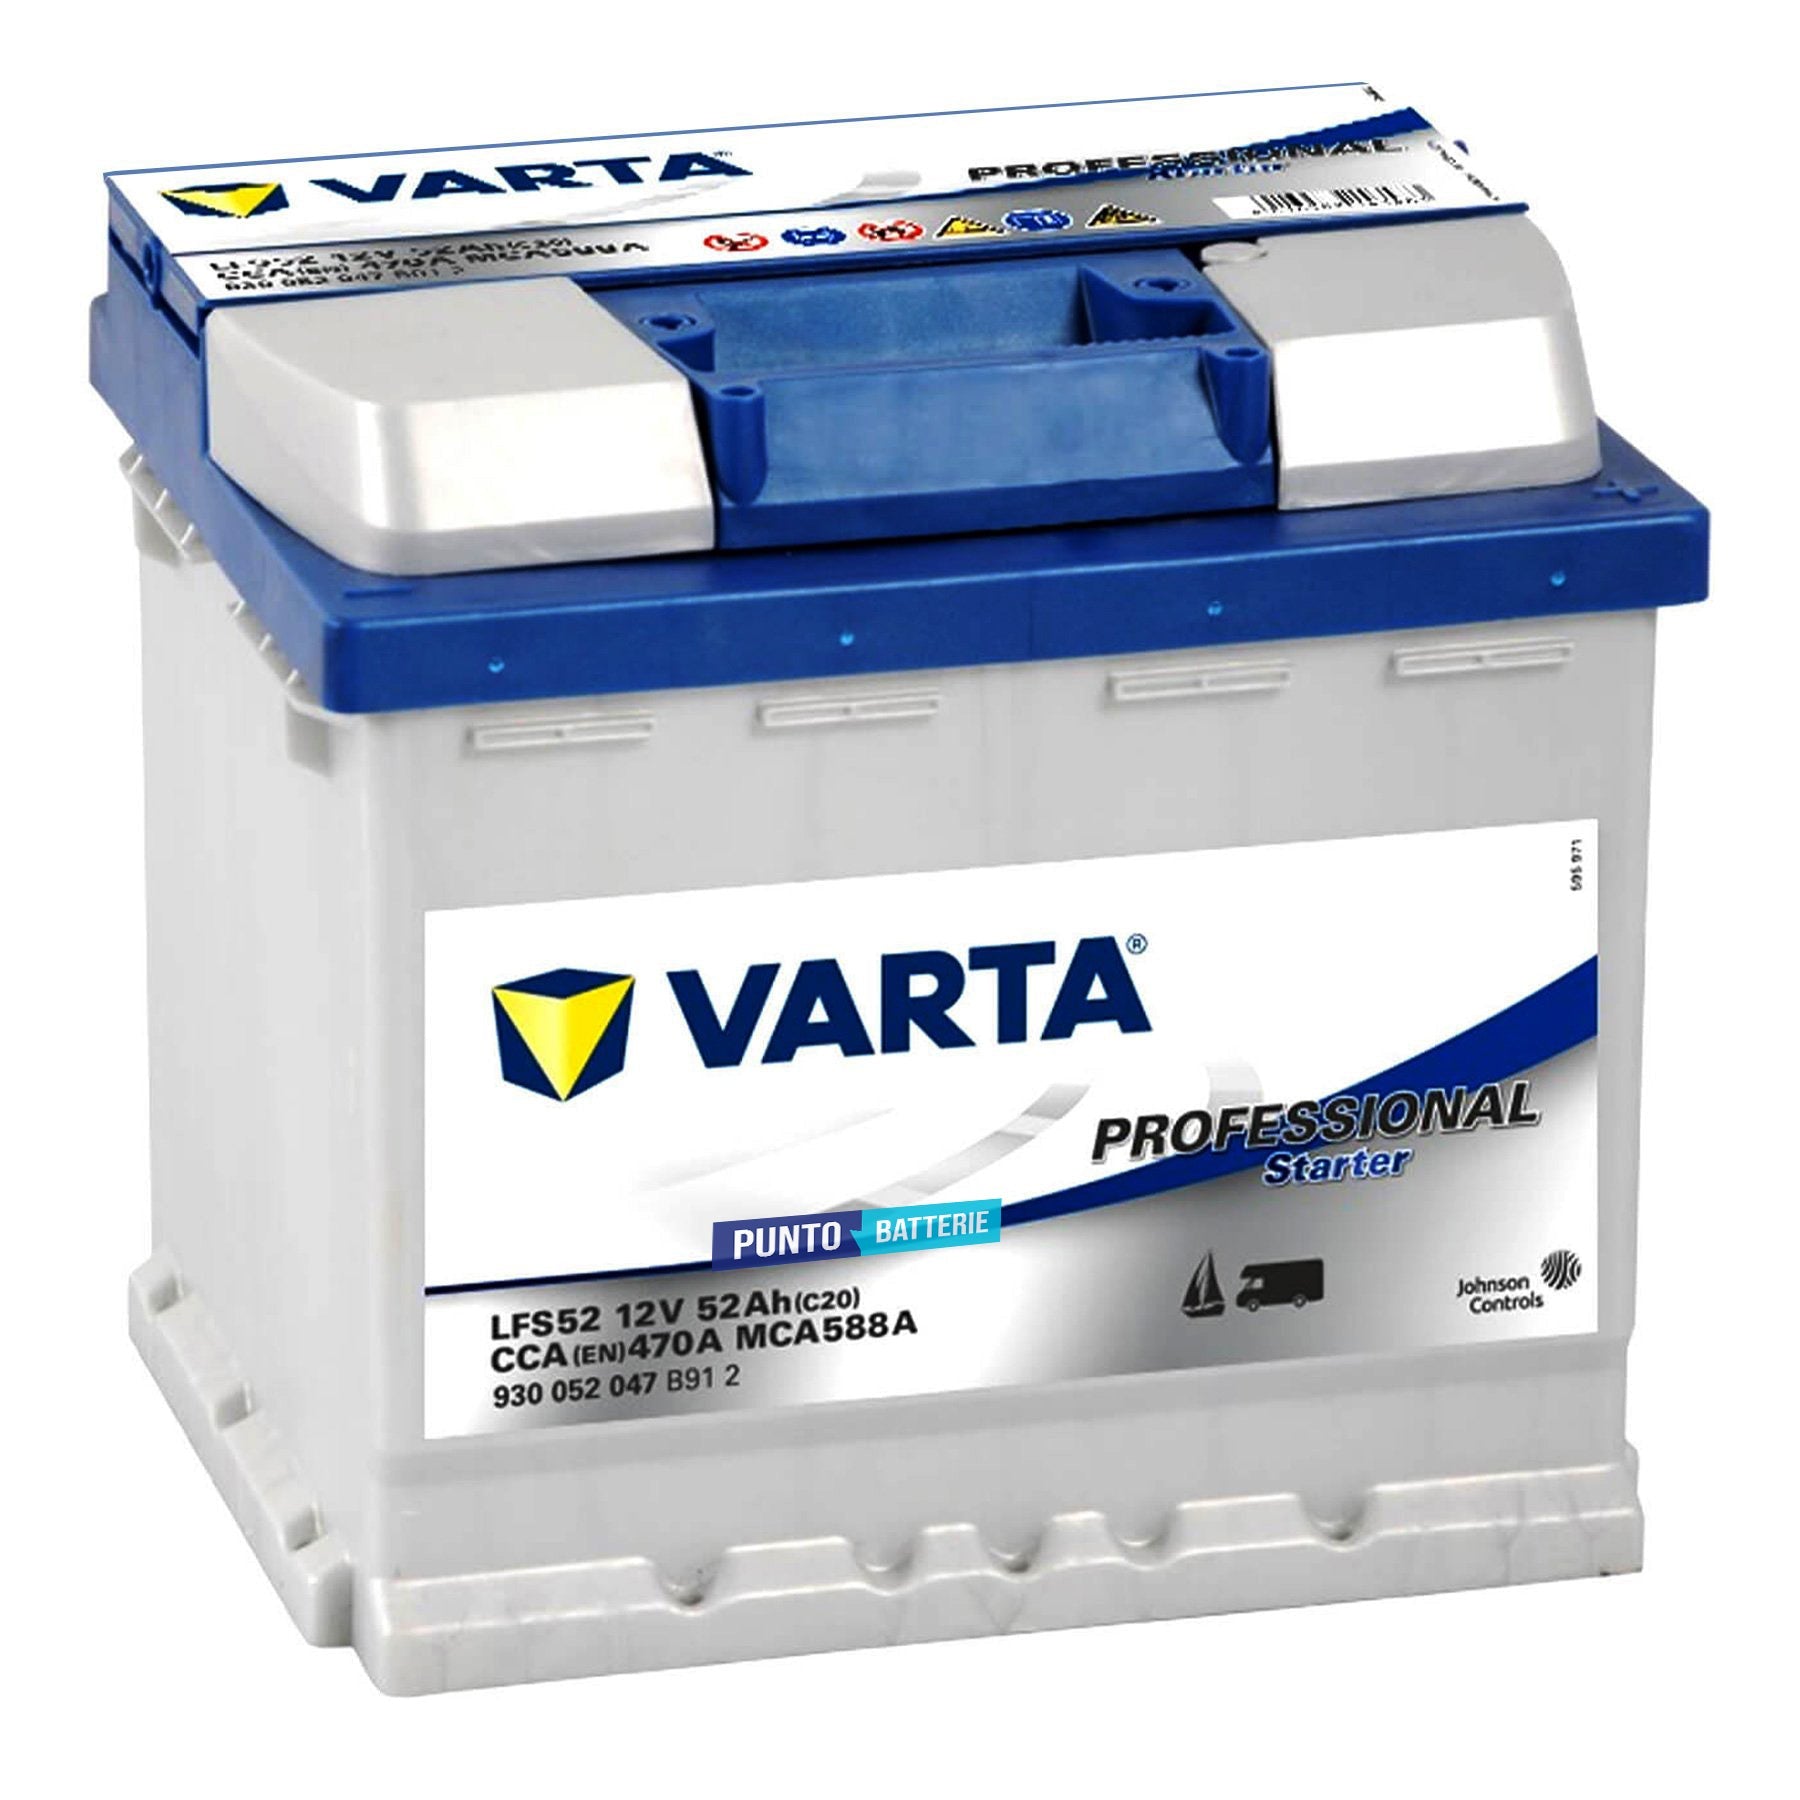 Varta E29 - 6V - 70AH - 300A (EN), 120,00 €